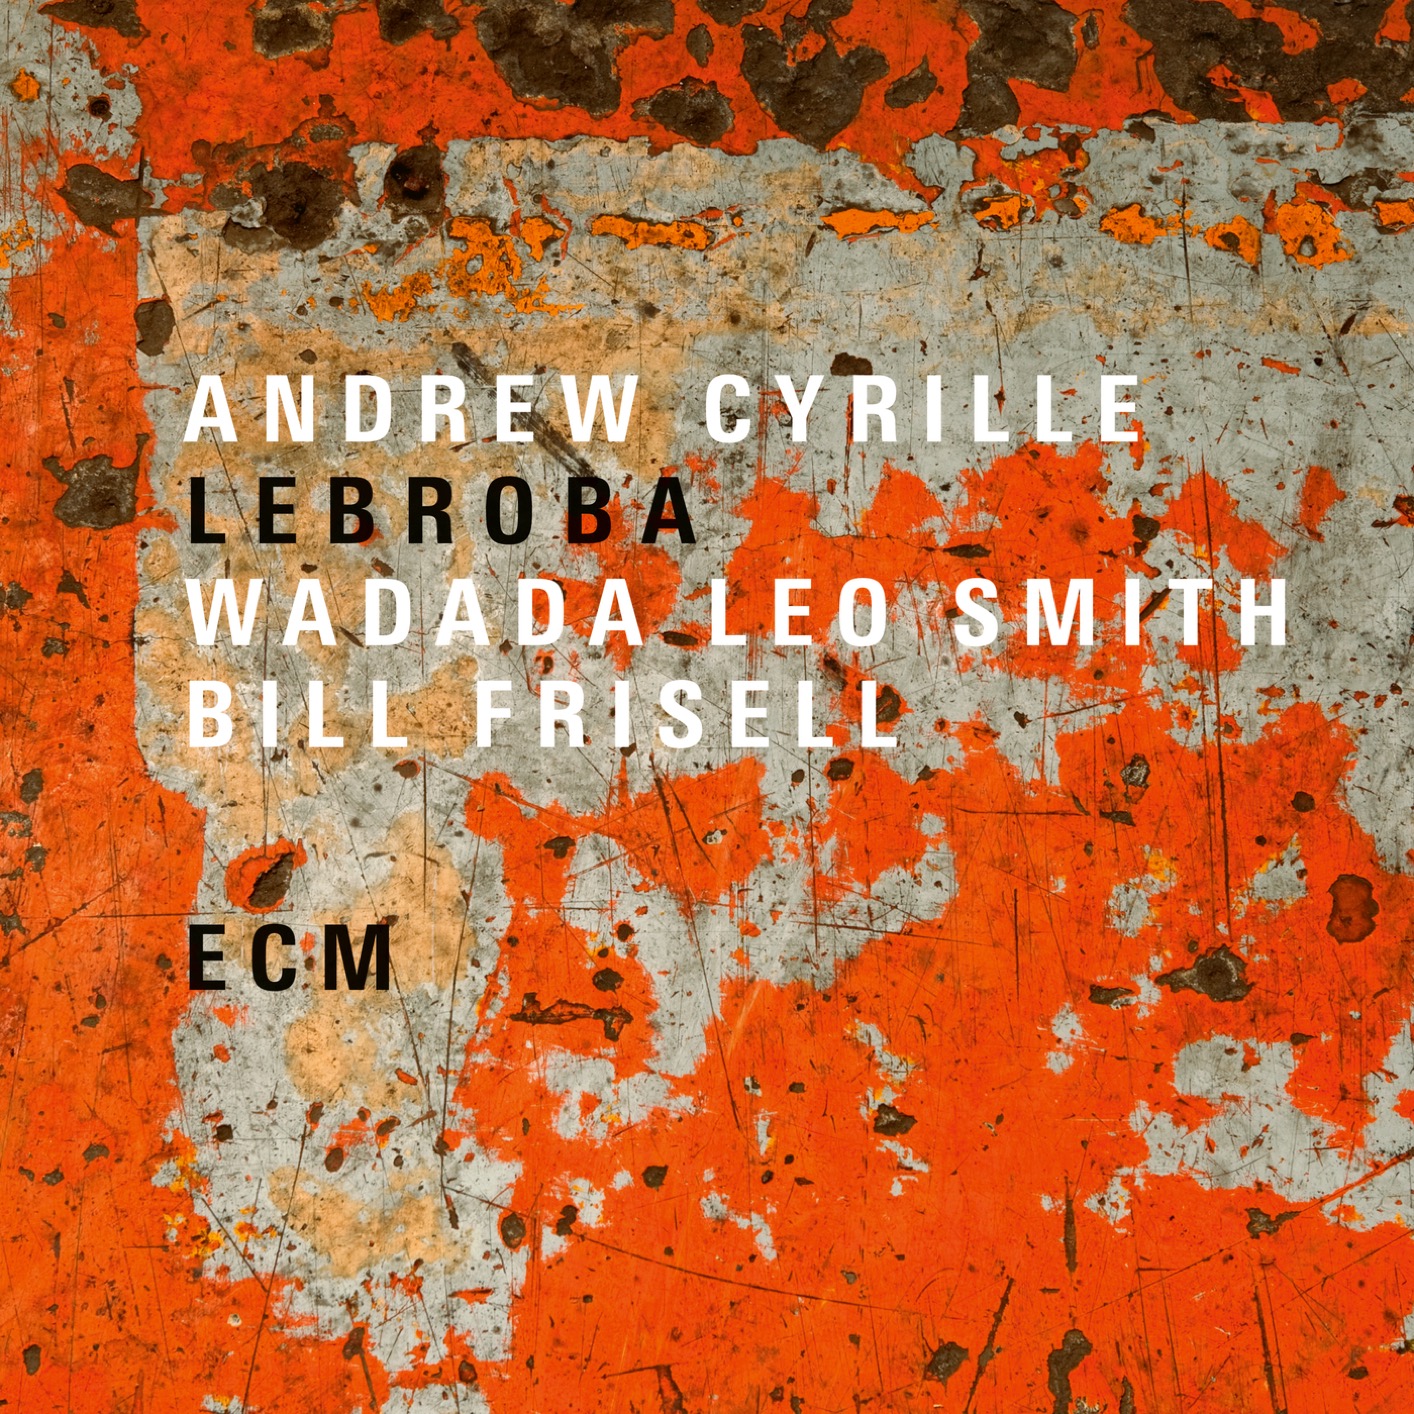 Andrew Cyrille, Wadada Leo Smith & Bill Frisell – Lebroba (2018) [FLAC 24bit/88,2kHz]